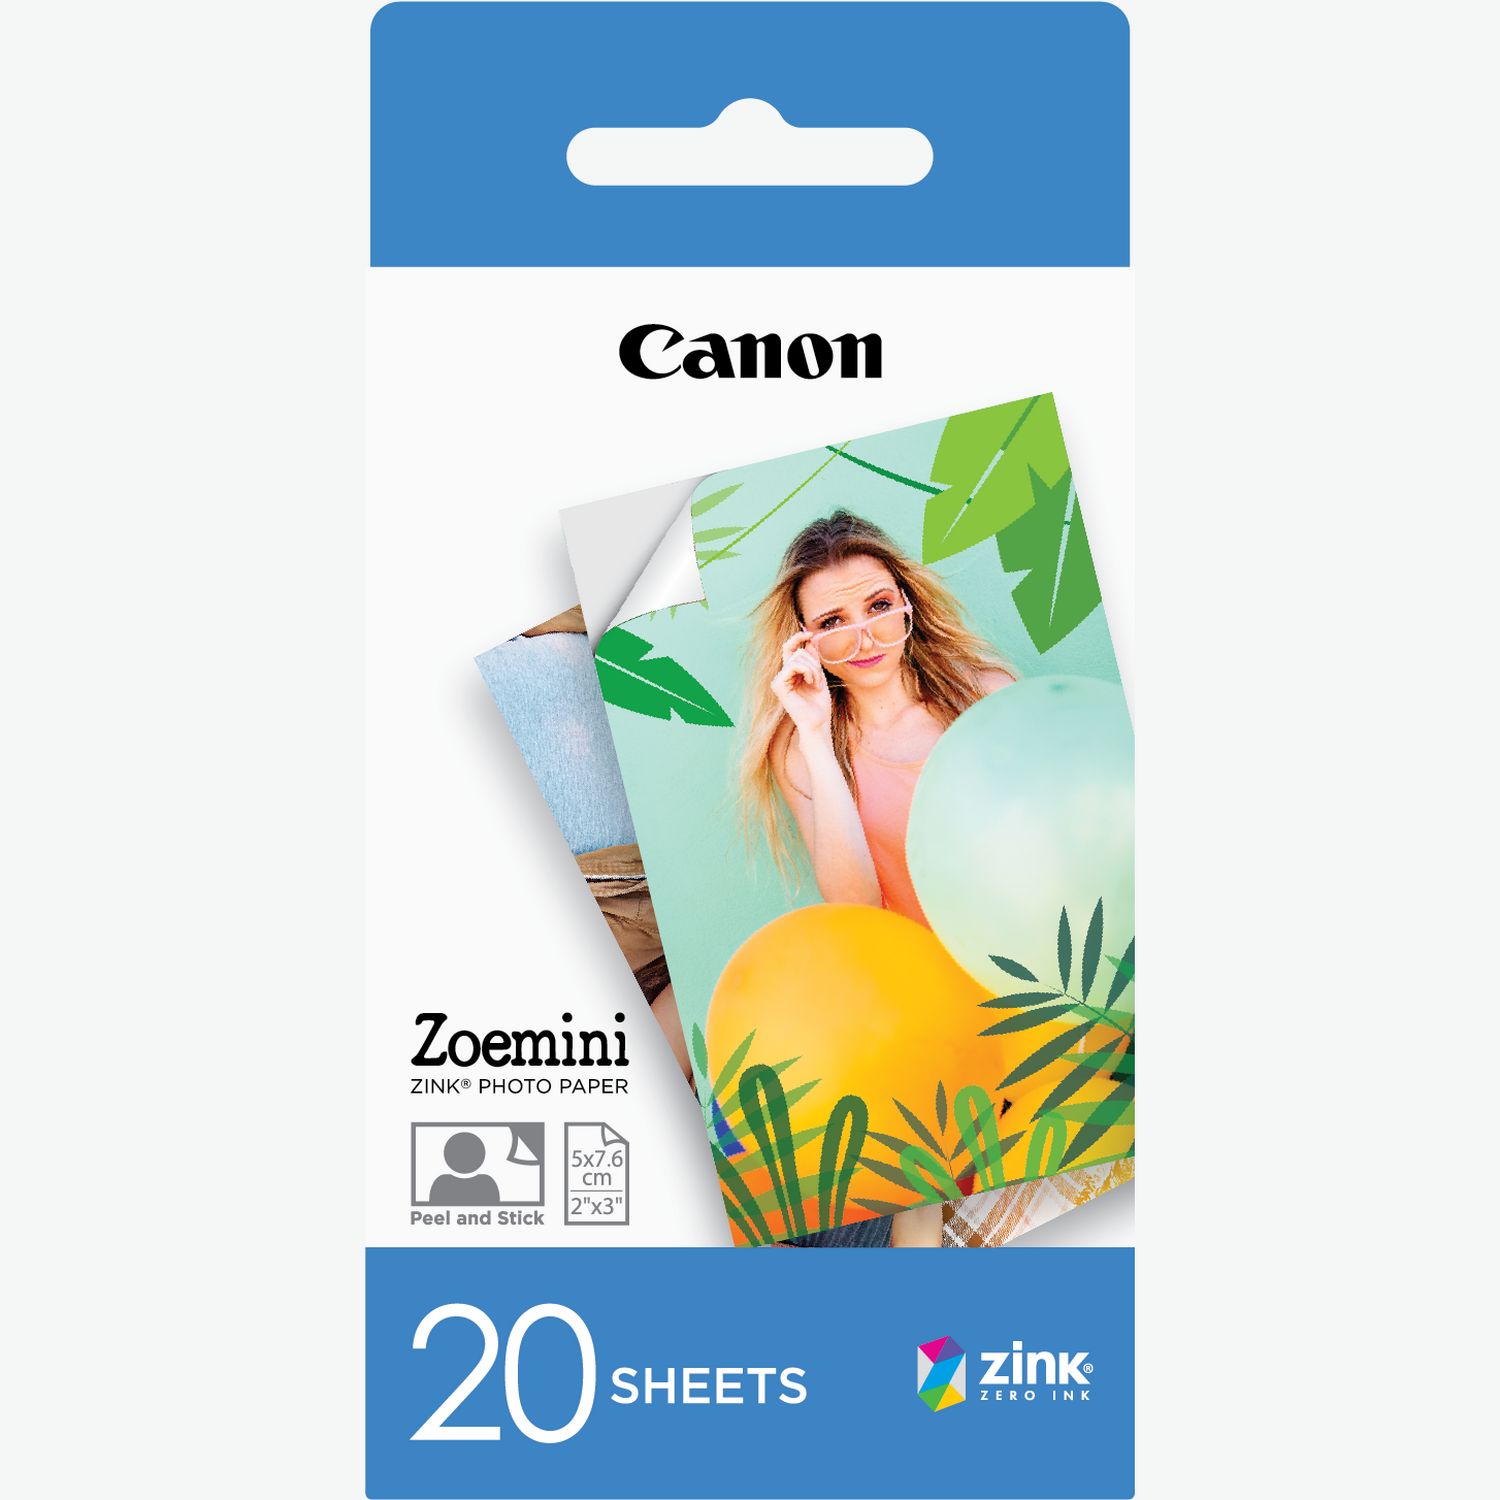 Canon IVY Mobile - Mini impresora fotográfica portátil, color oro rosa con  papel fotográfico Zink, 20 hojas